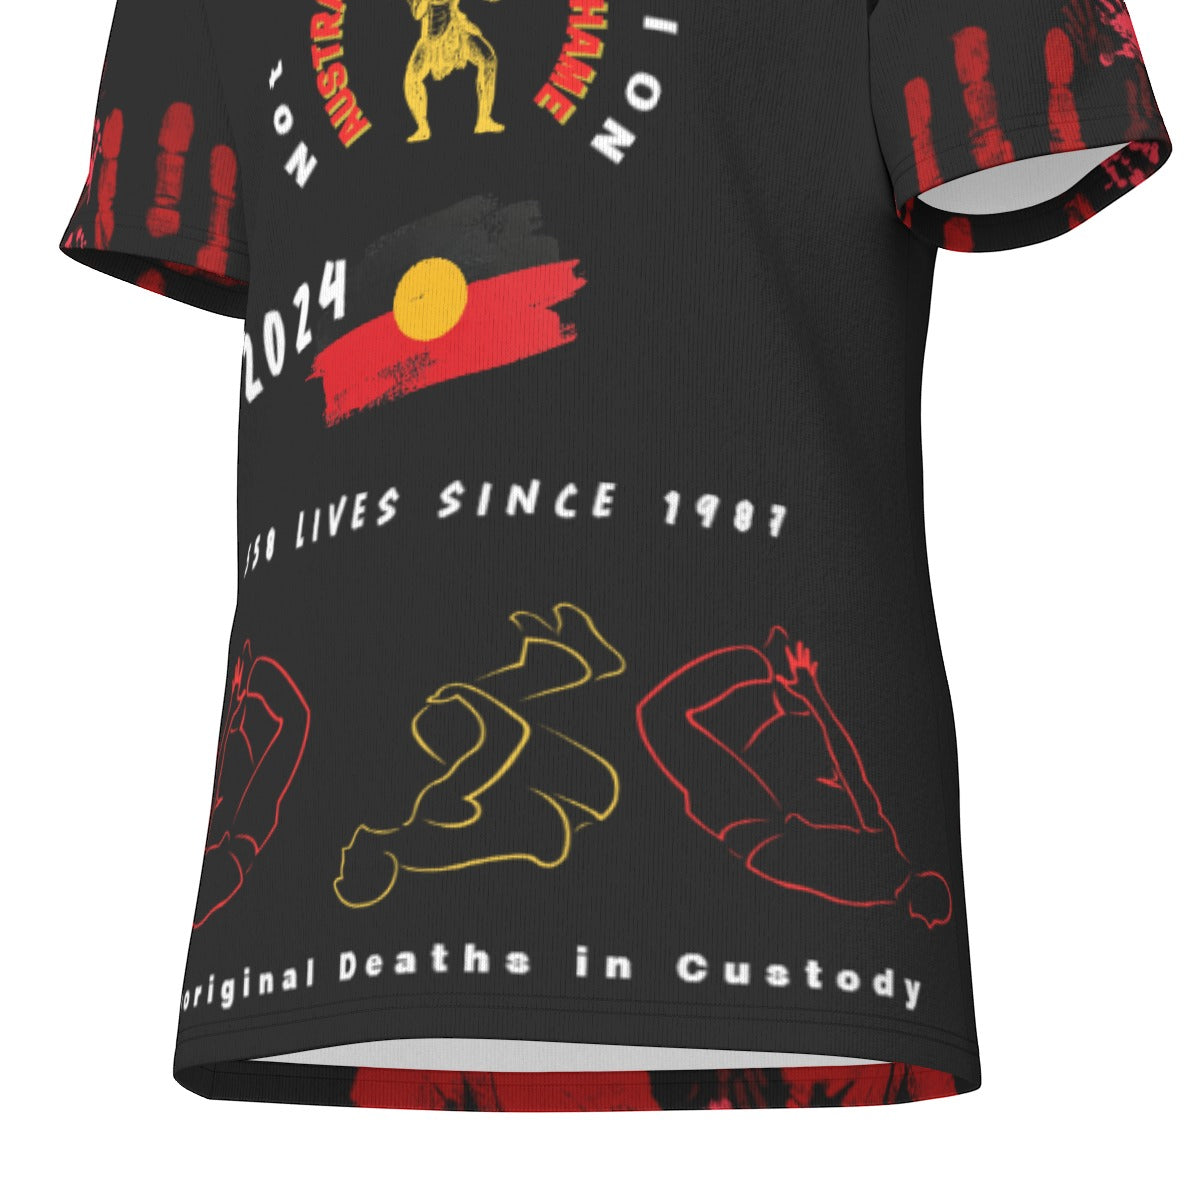 2024 Aboriginal Deaths in Custody T-Shirt by Koori Threads| 190GSM Cotton